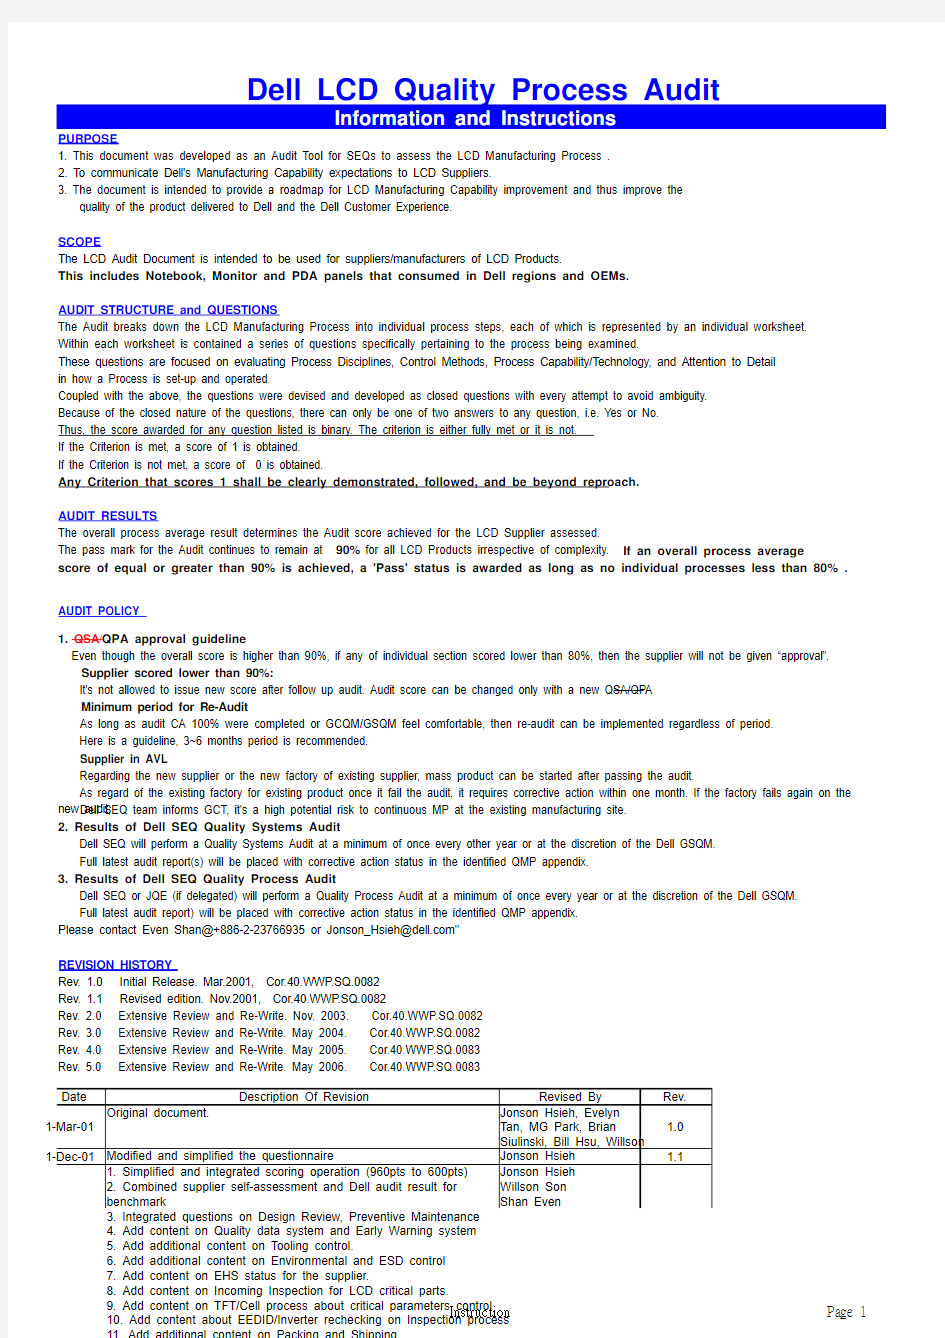 Dell LCD QPA checklist V5